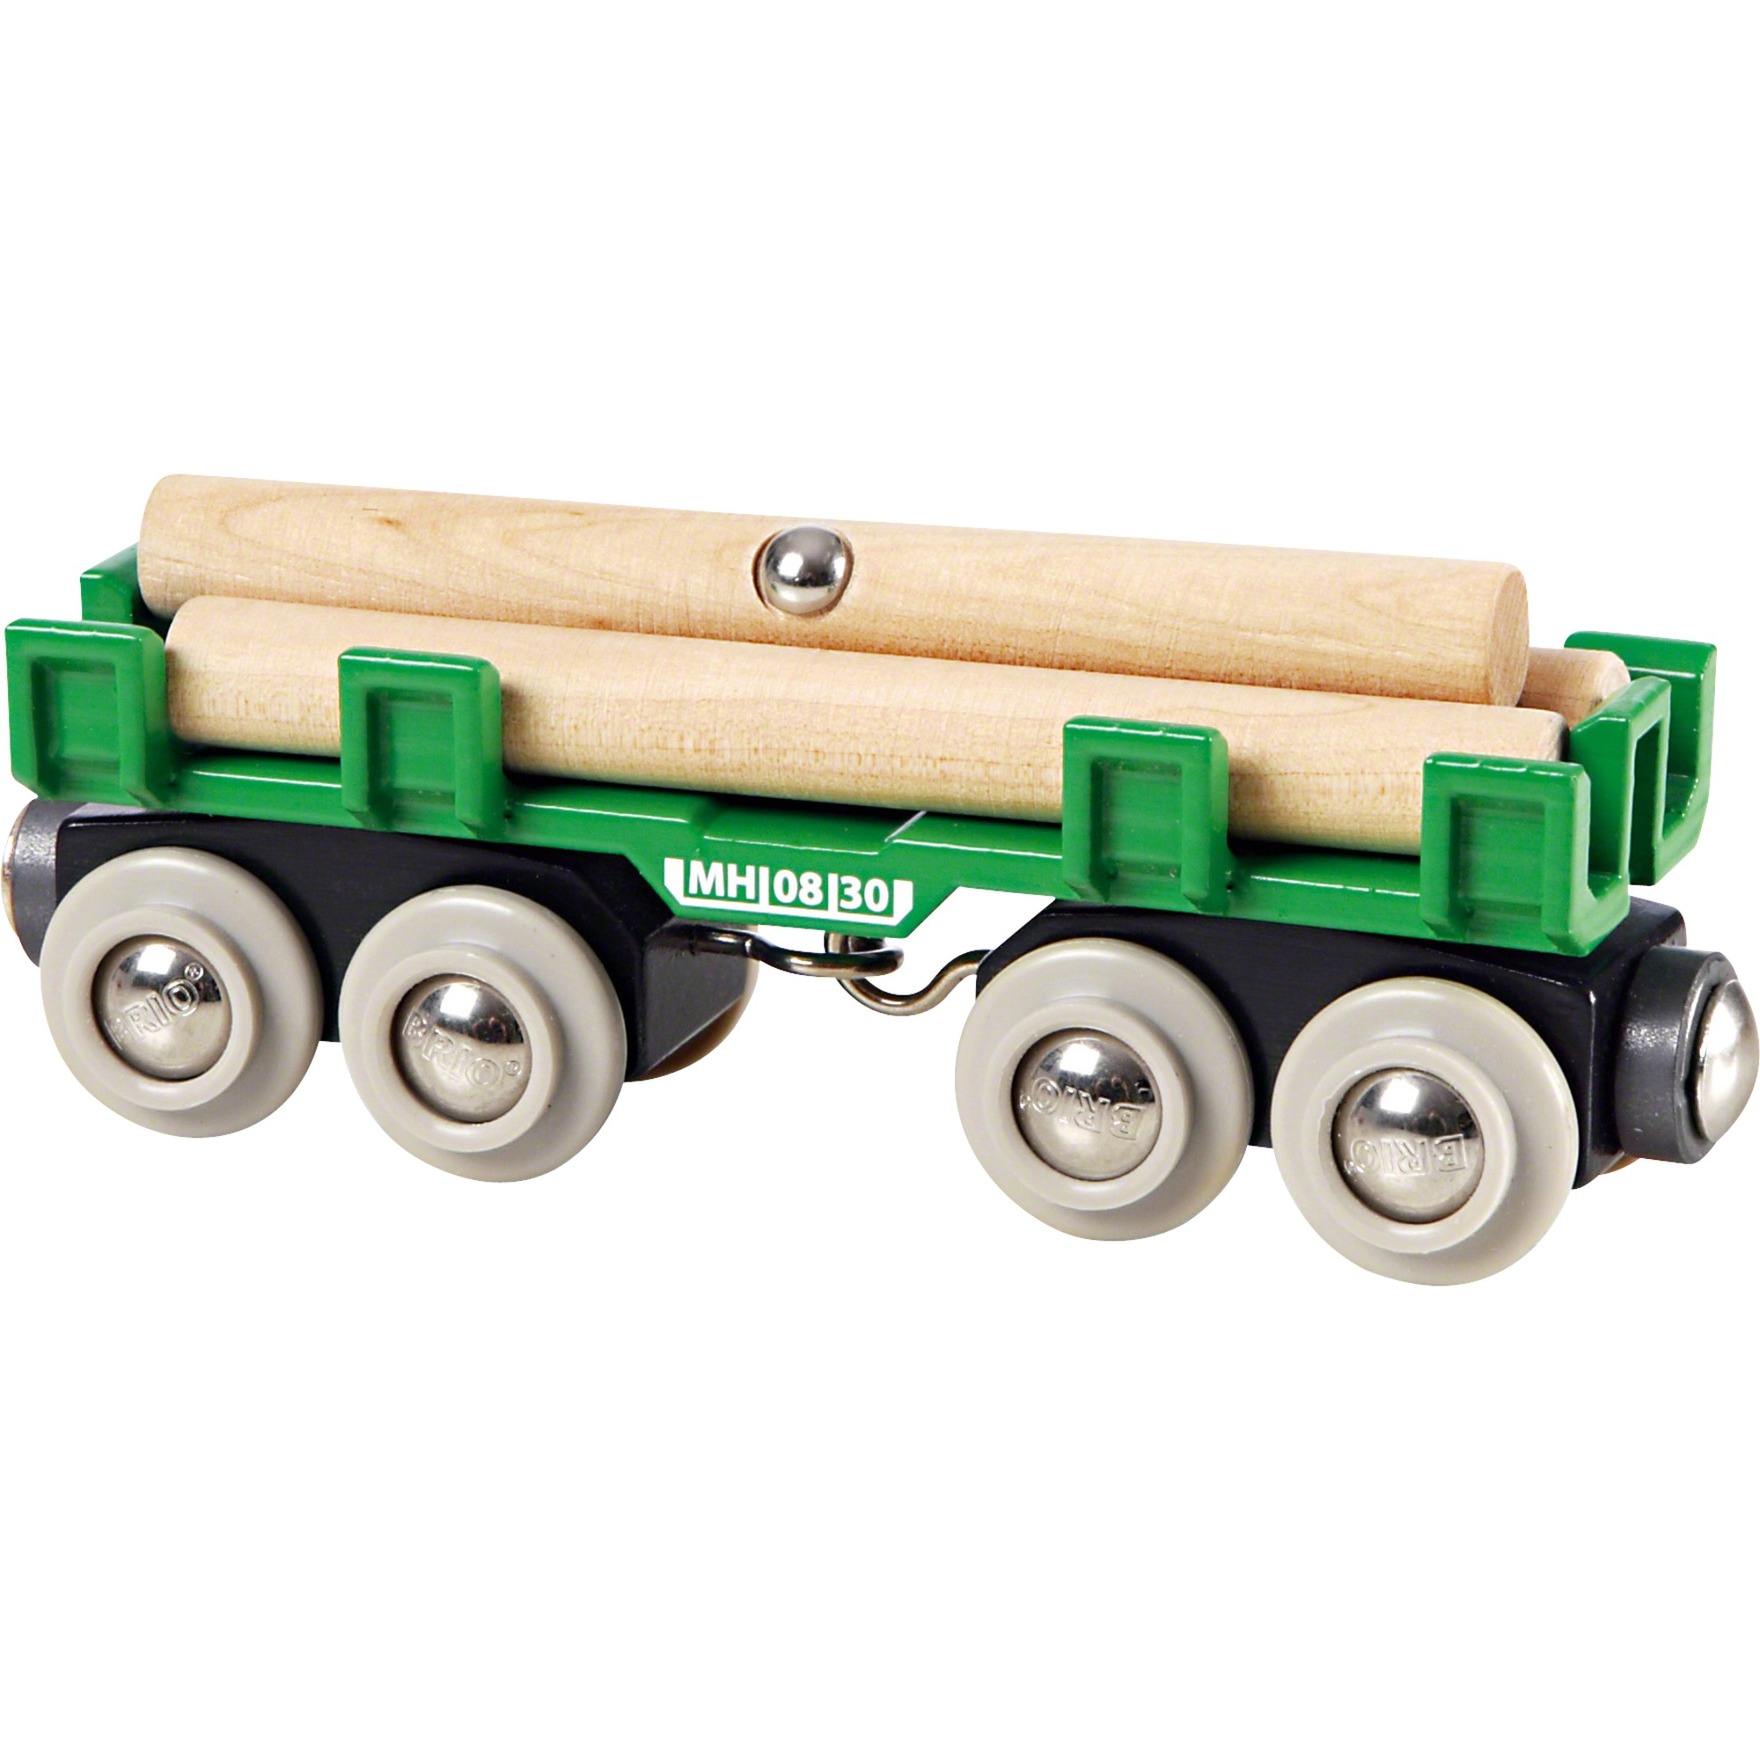 Image of Alternate - World Langholzwagen, Spielfahrzeug online einkaufen bei Alternate